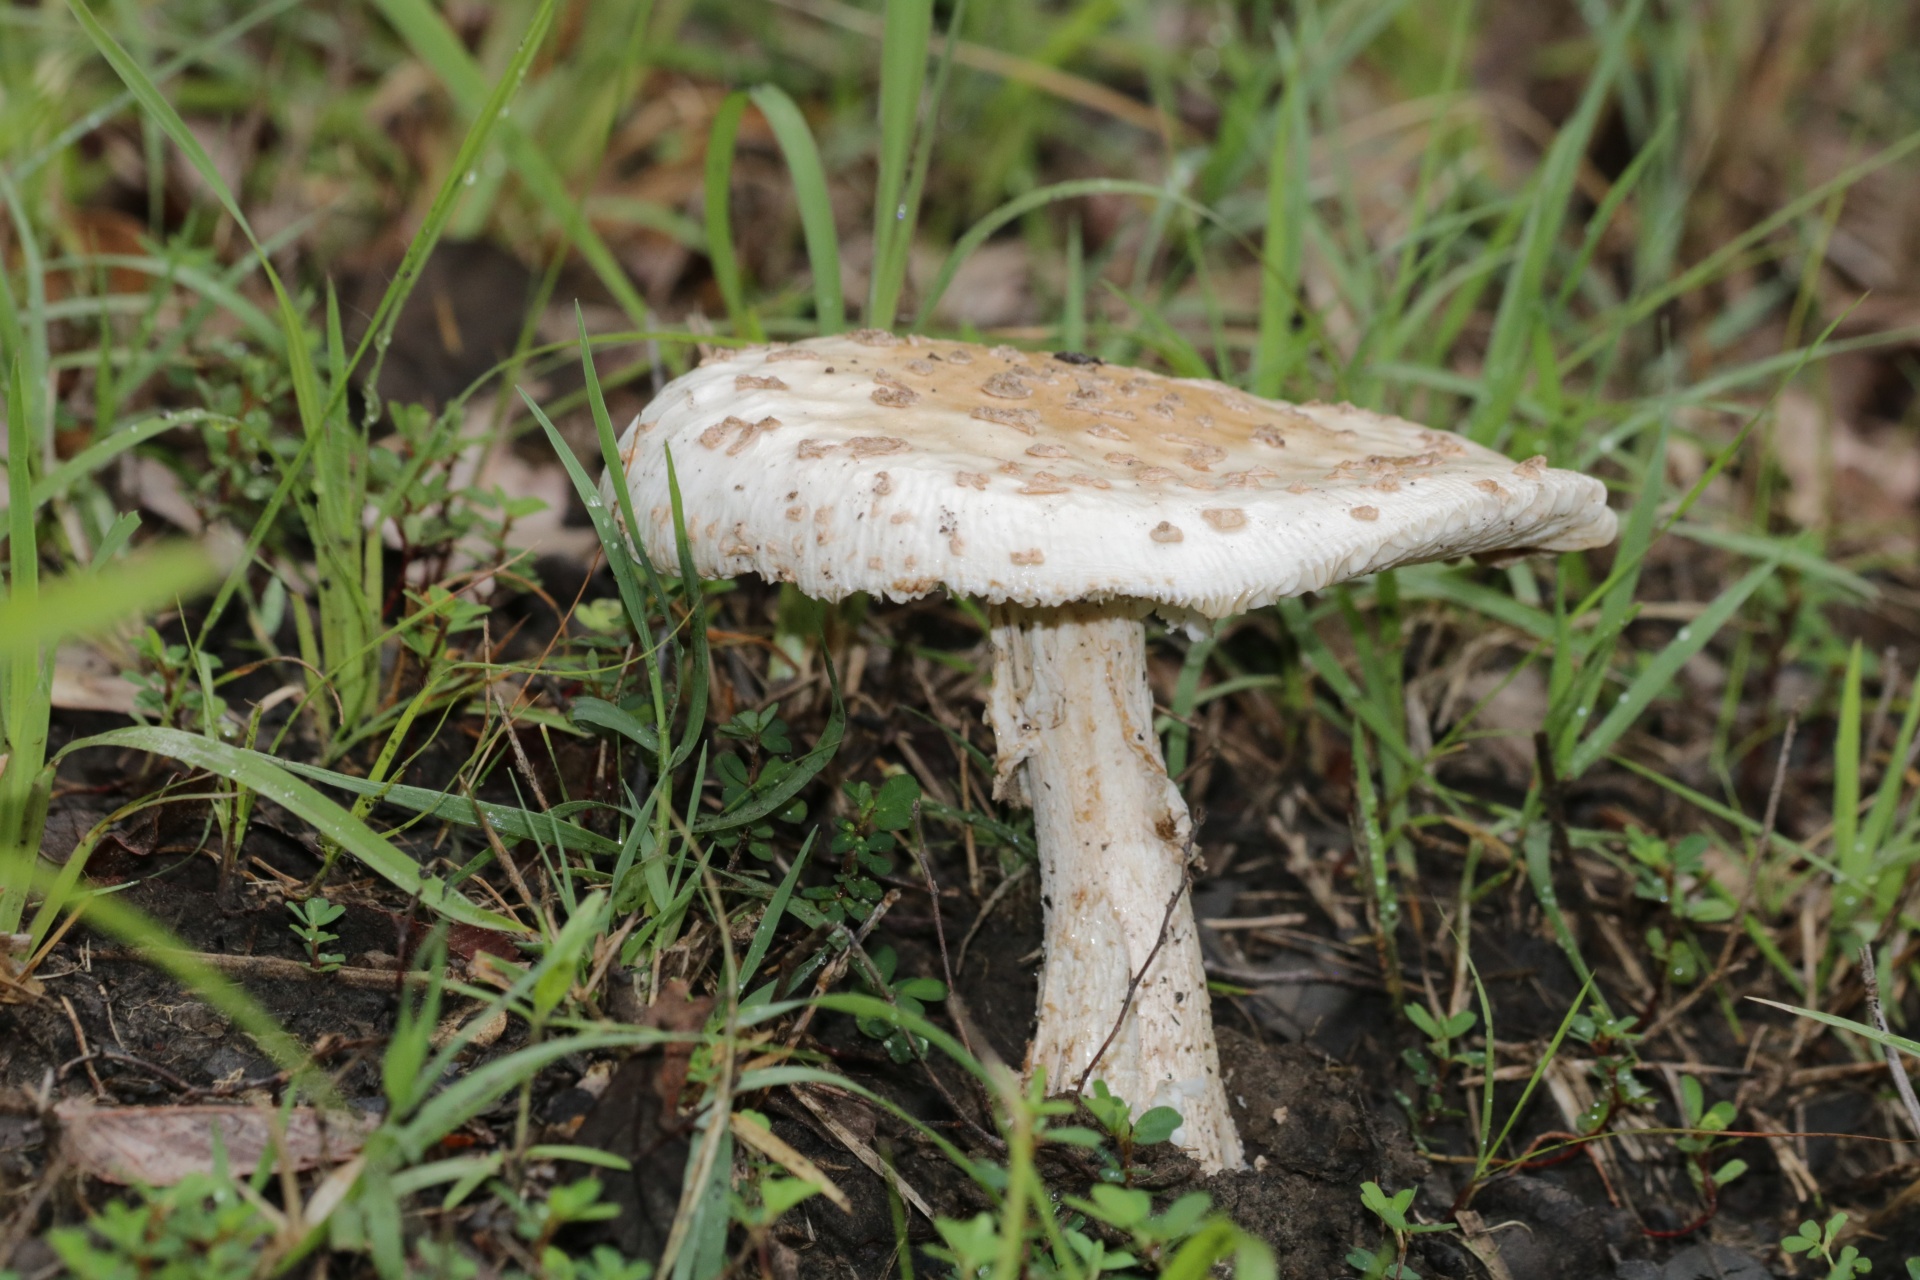 White Amanita Mushroom In Grass